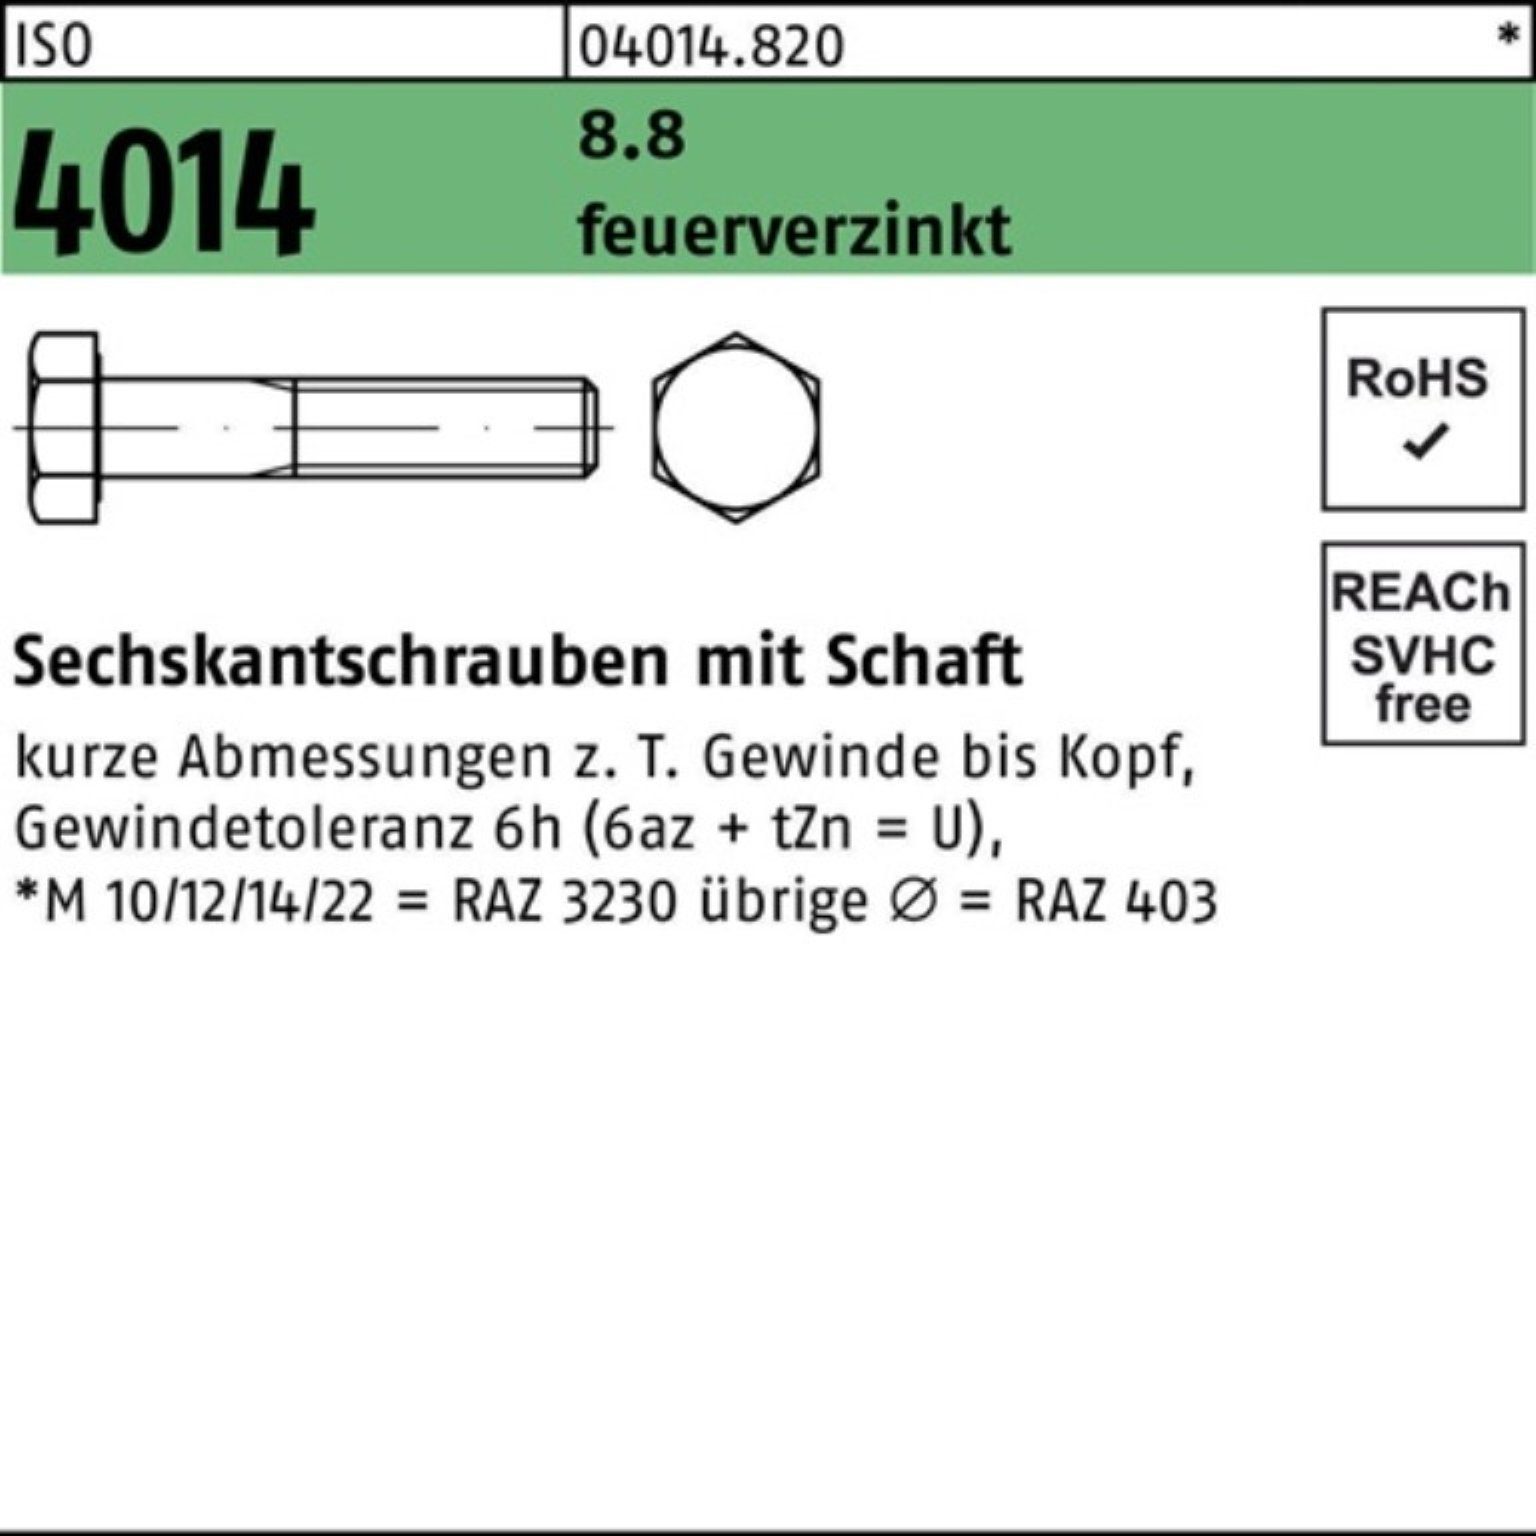 Bufab Sechskantschraube 100er Pack Sechskantschraube ISO 4014 Schaft M36x 180 8.8 feuerverz. 1